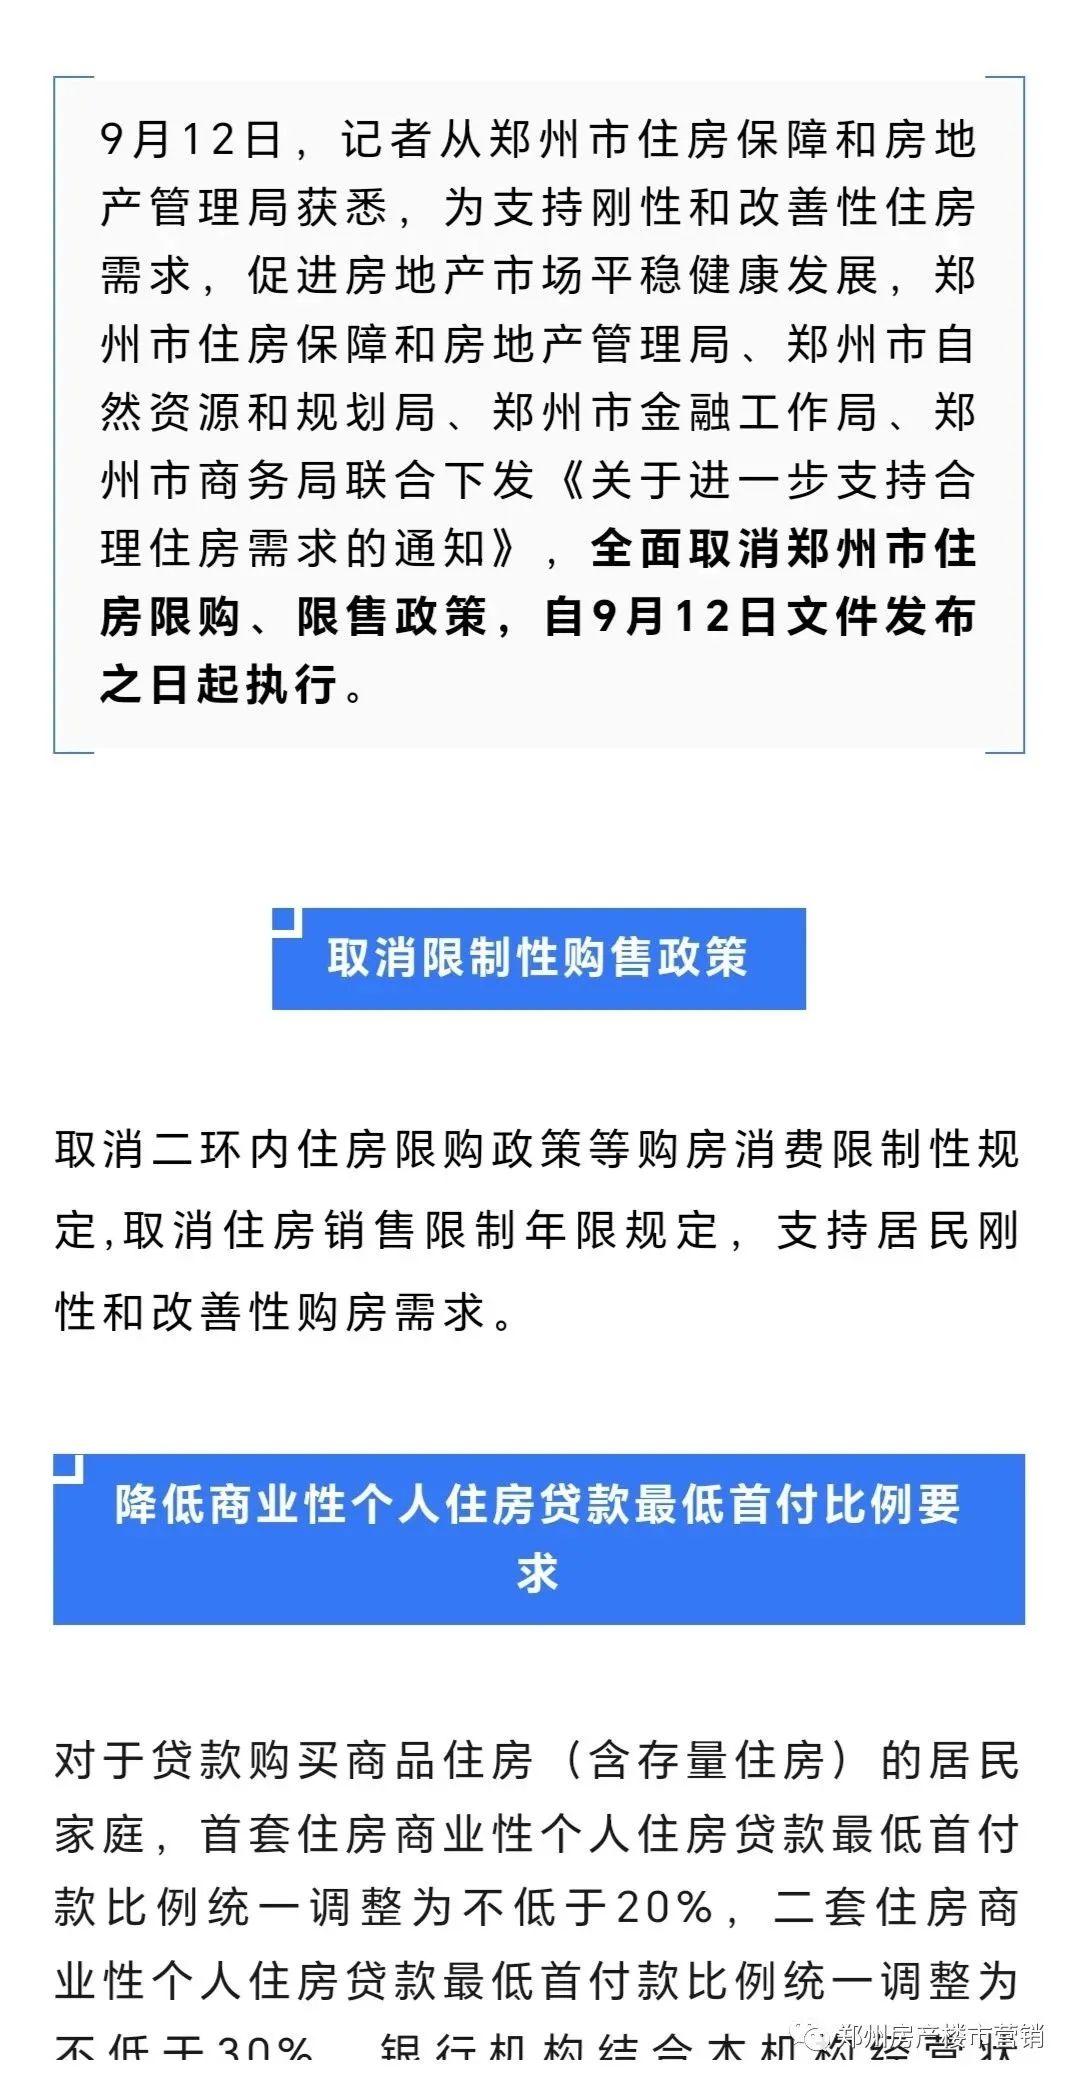 河南郑州全面取消限购、限售政策，下调二套房首付款比例_住房_责任_支持